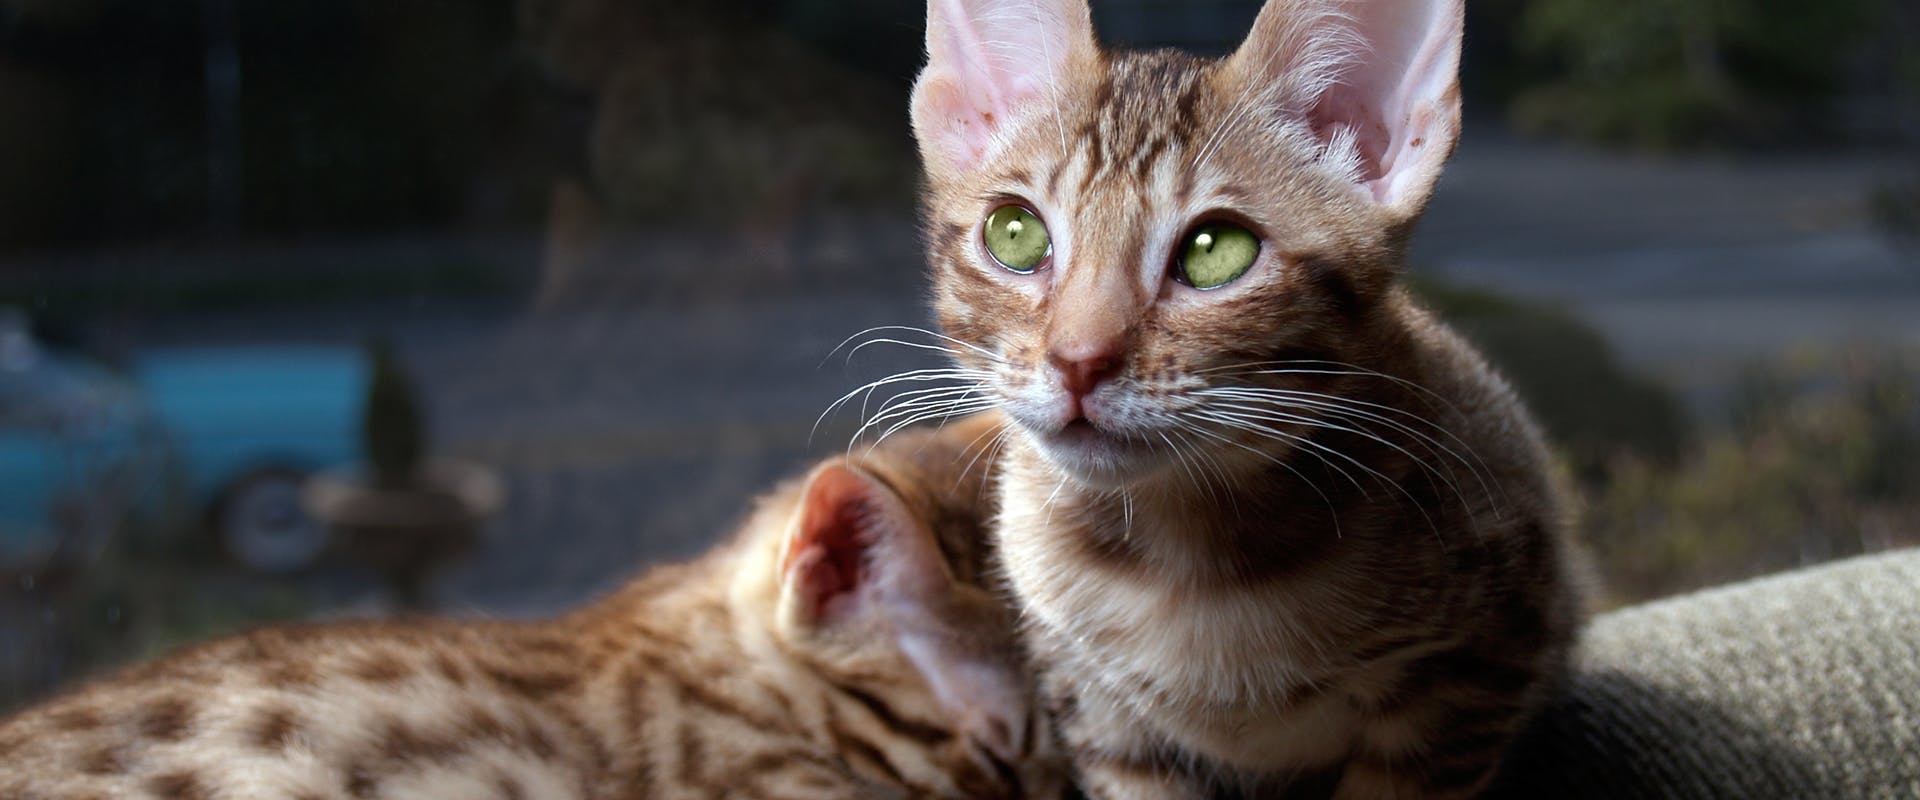 Two cute Ocicat kittens